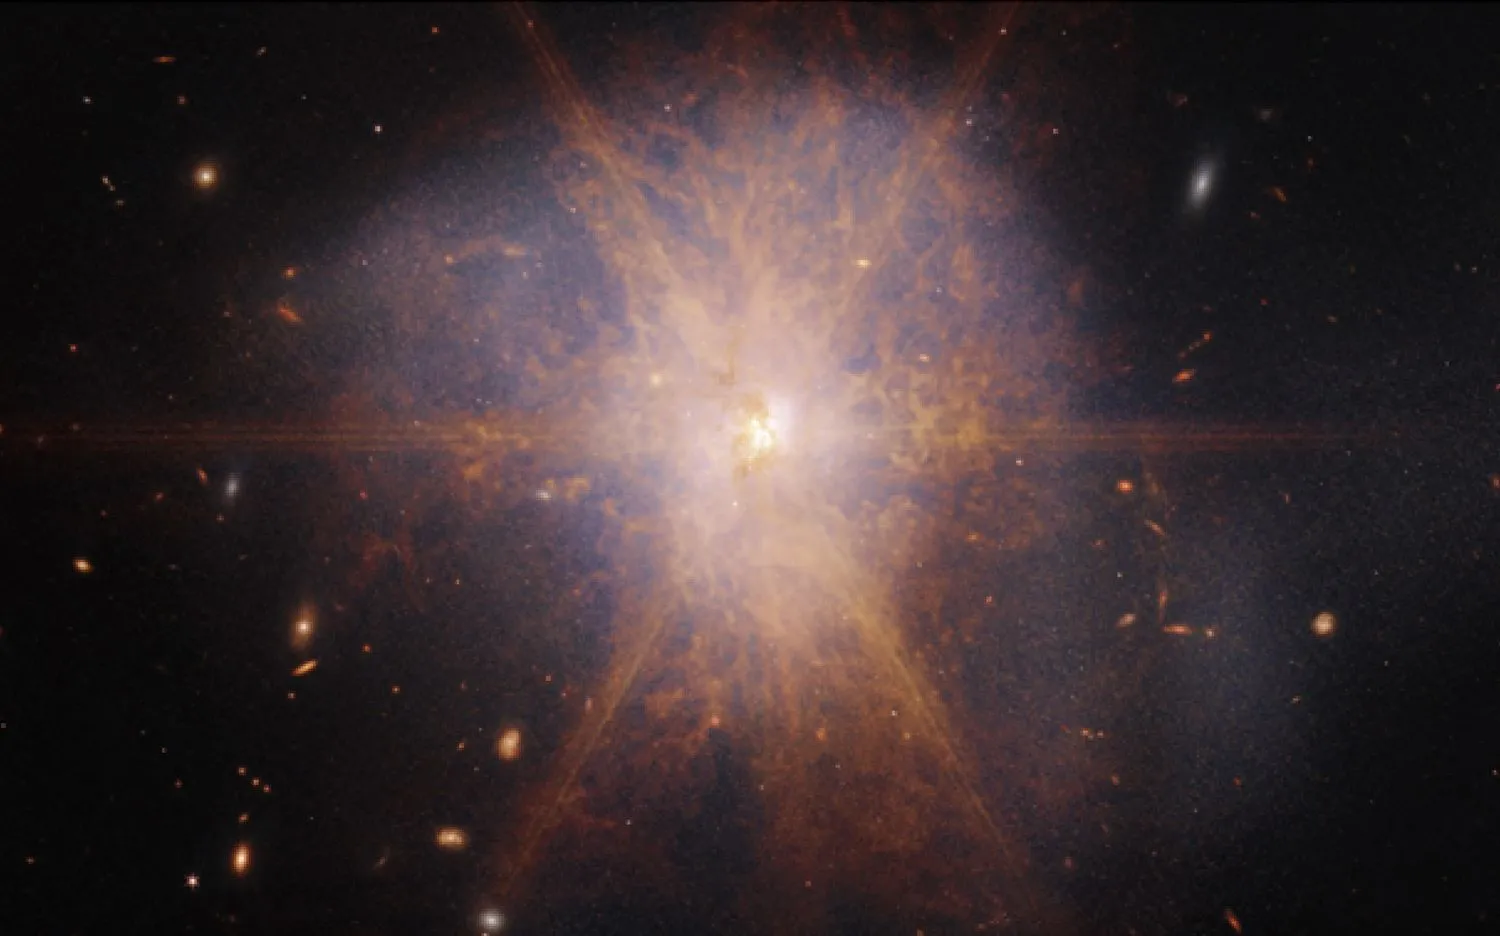 Das James-Webb-Weltraumteleskop der NASA hat dieses Bild der fusionierenden Galaxien, bekannt als Arp 220, aufgenommen. Das Objekt liegt etwa 250 Millionen Lichtjahre von der Erde entfernt.